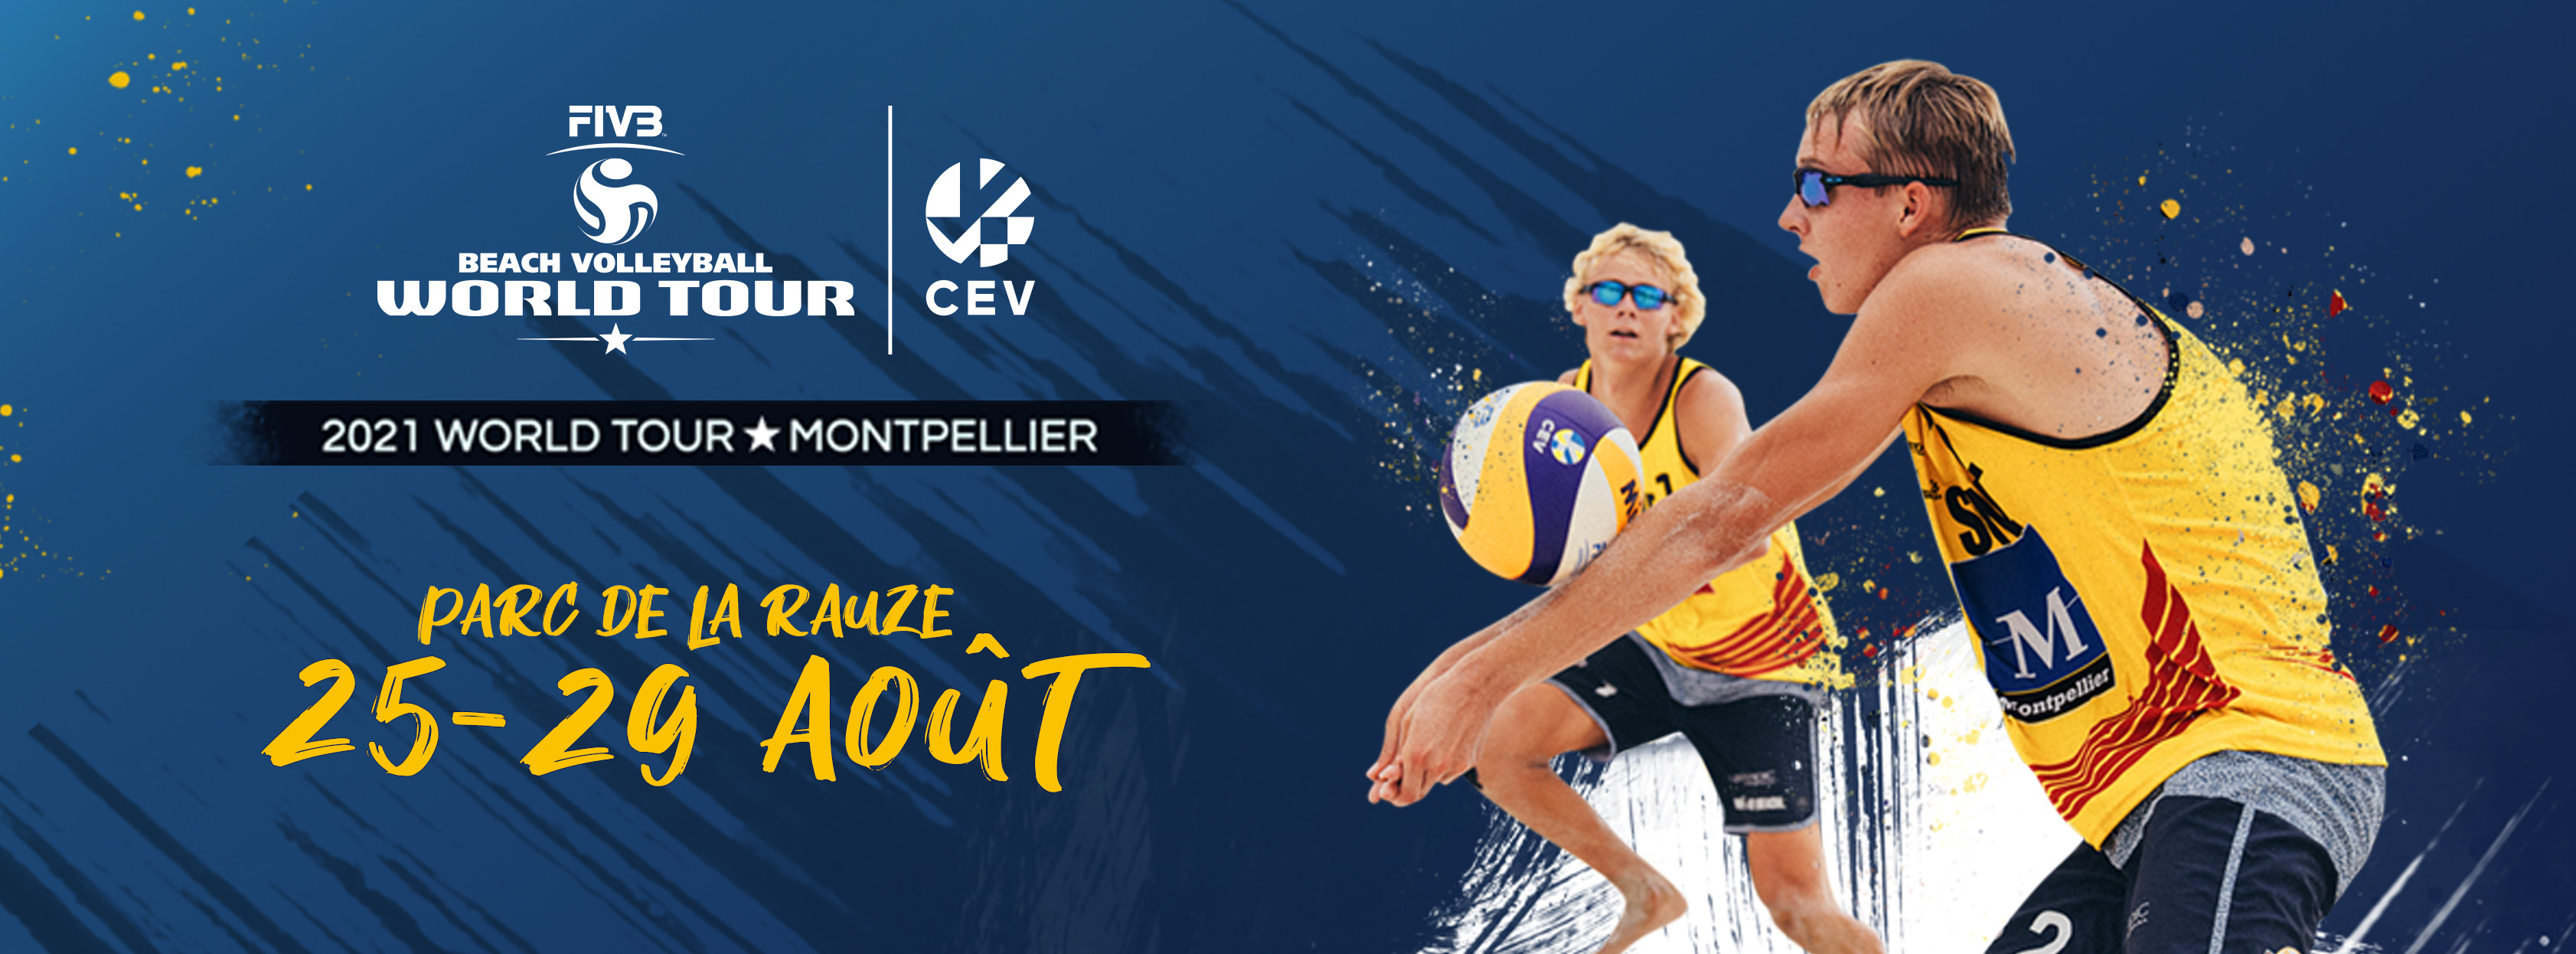 World Tour 1* Montpellier 2021 | Montpellier Méditerranée Métropole